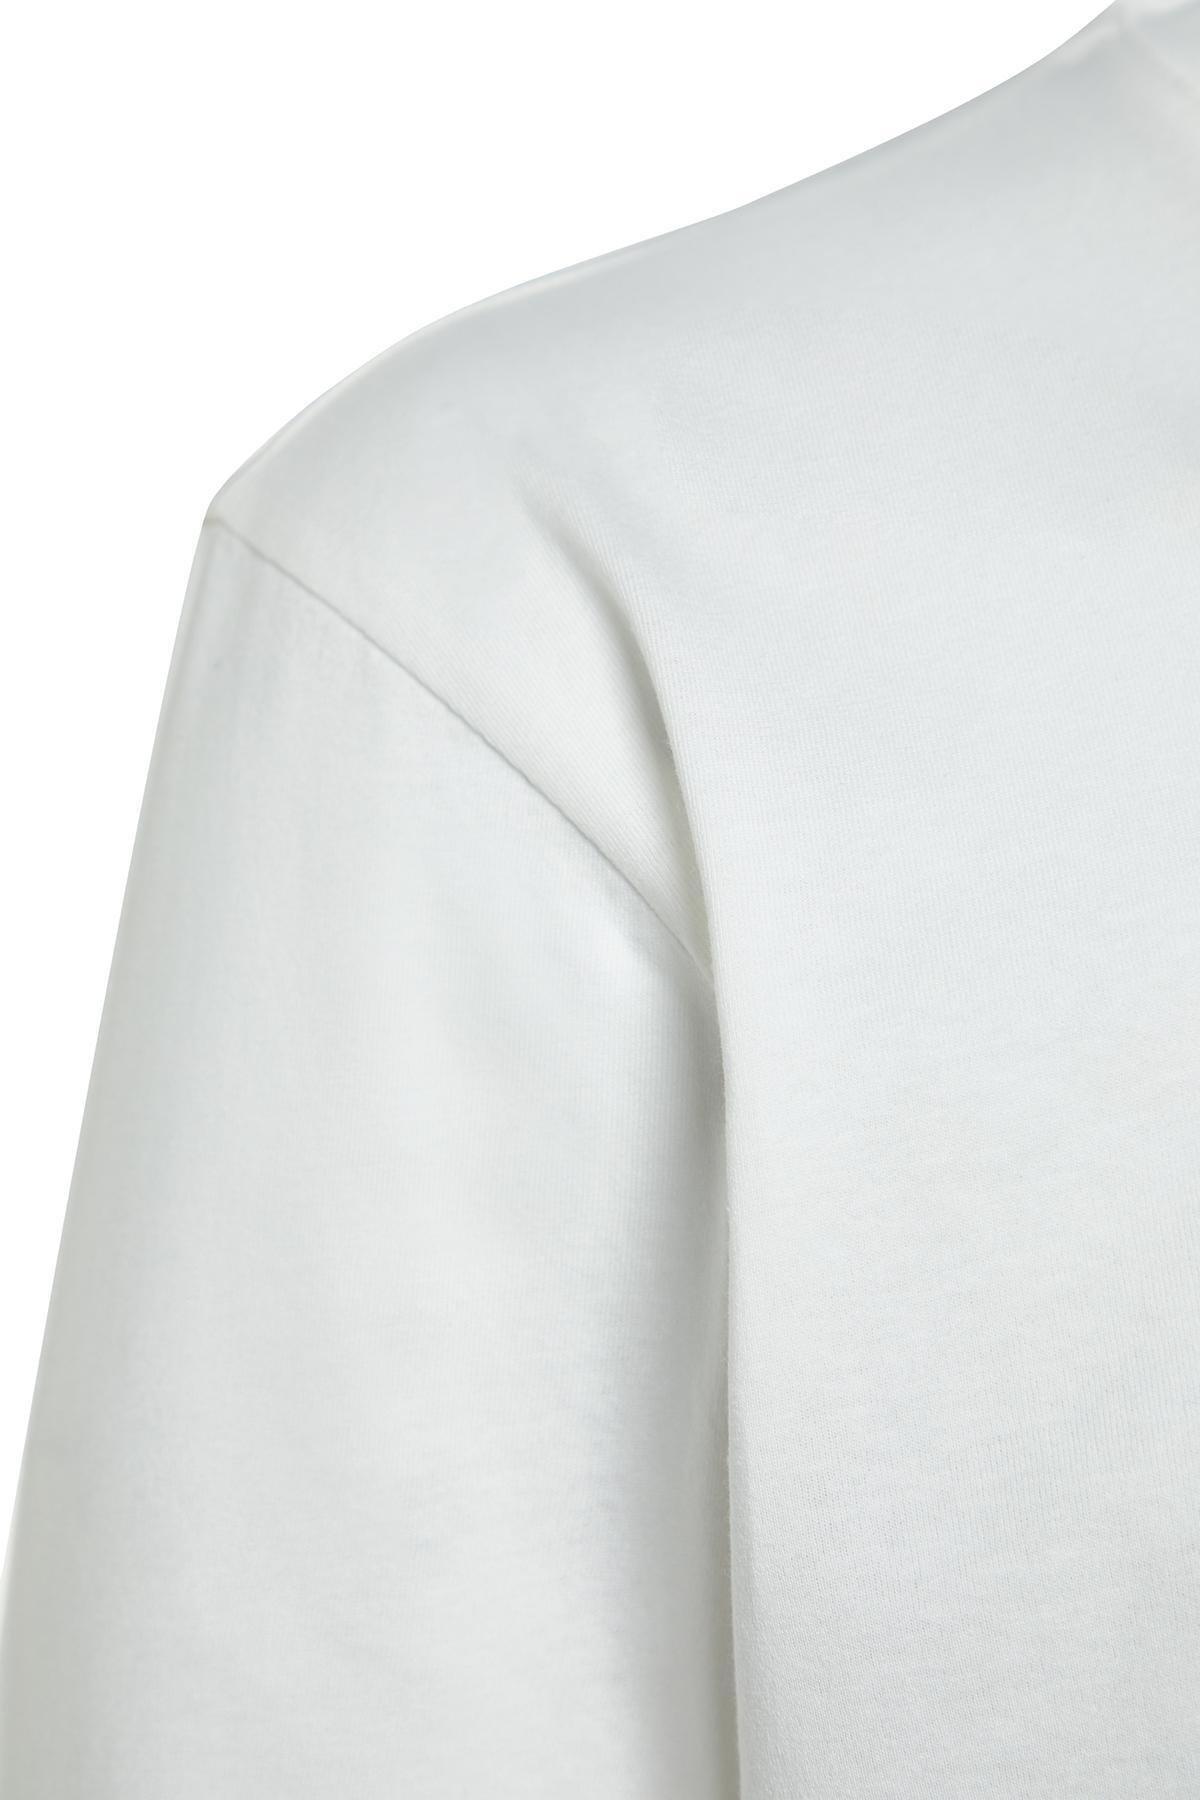 Trendyol - Multicolour Long Sleeve T-Shirt, Set Of 2